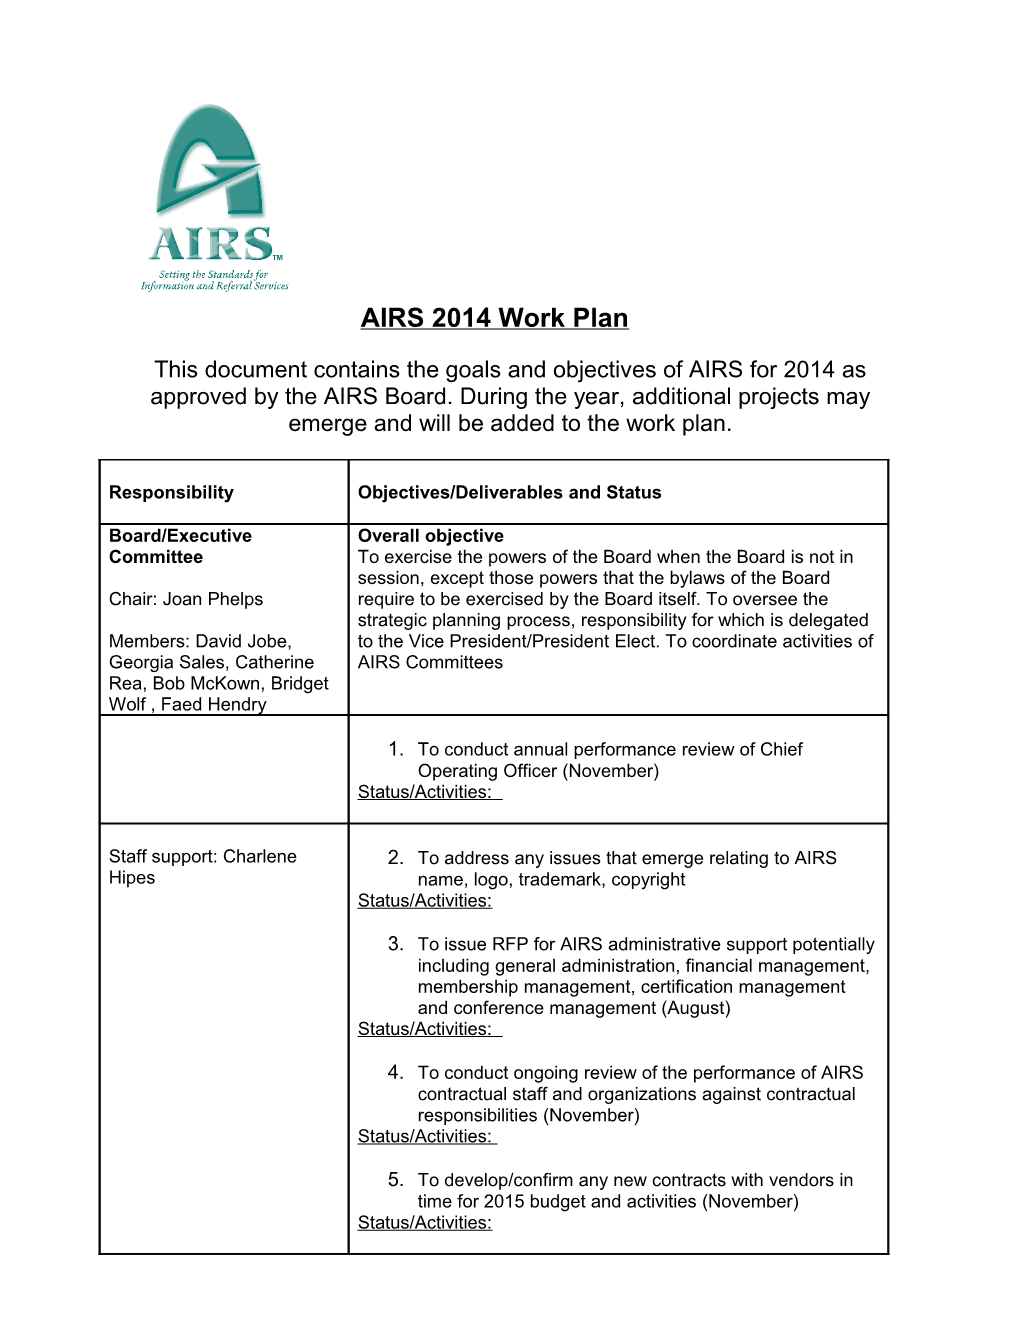 AIRS 2007 Work Plan Draft